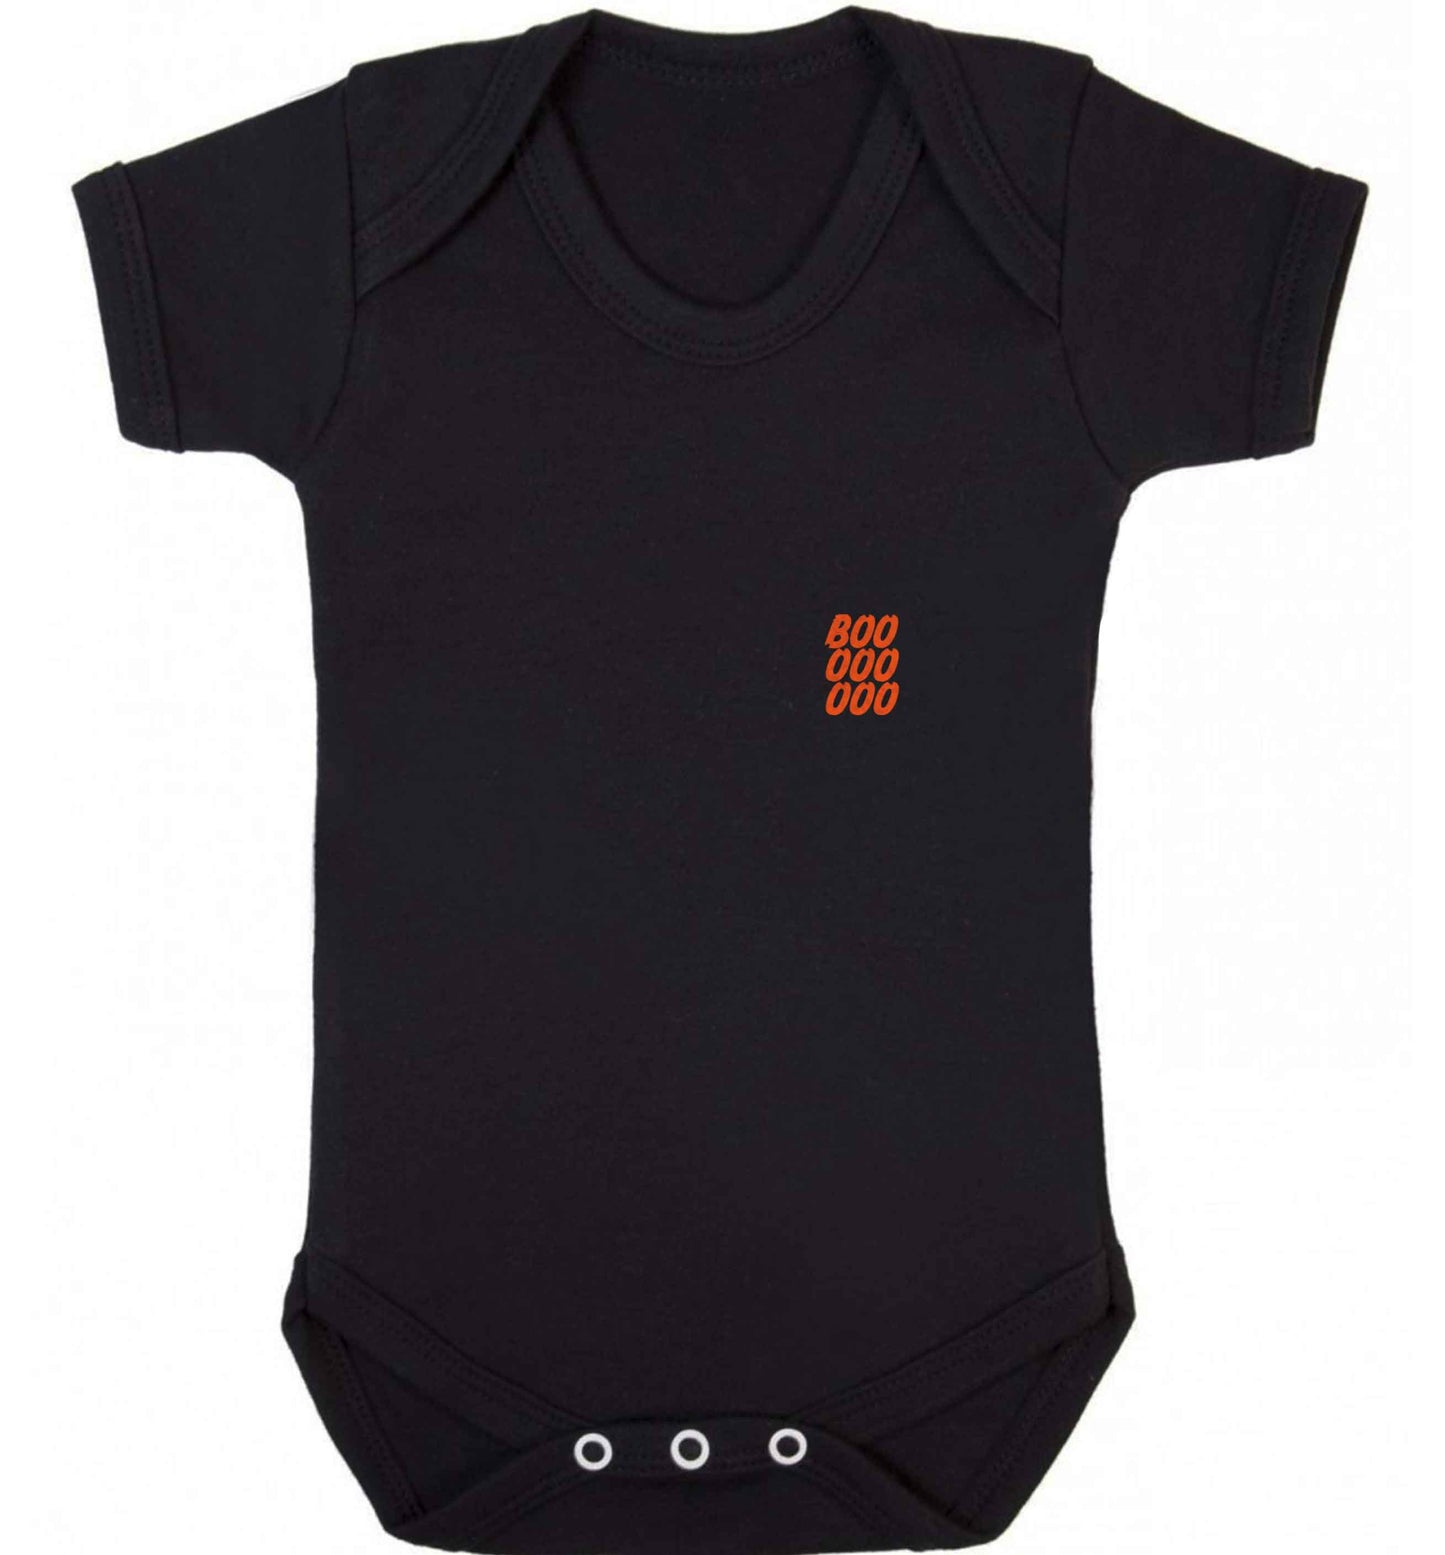 Boo pocket baby vest black 18-24 months